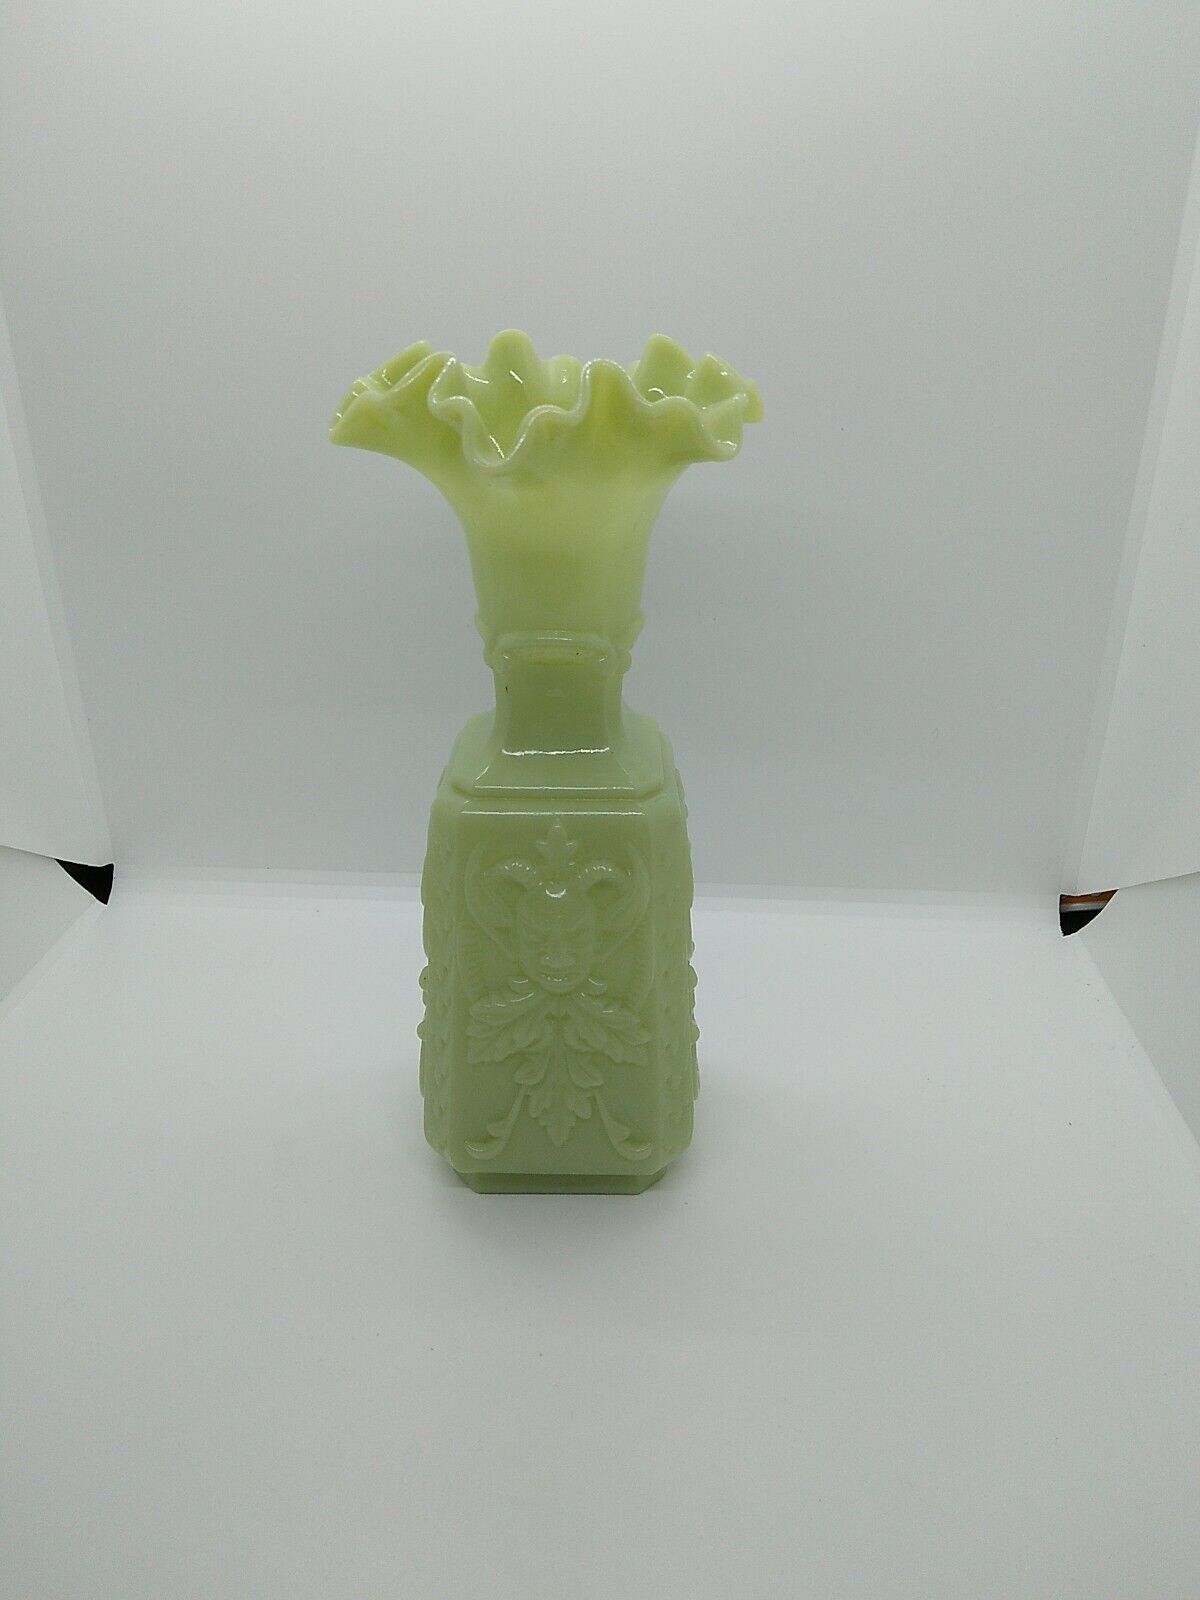 Rare Vintage Imp Glass Mephistopheles Green/White Milk Glass Vase Devil Greenman